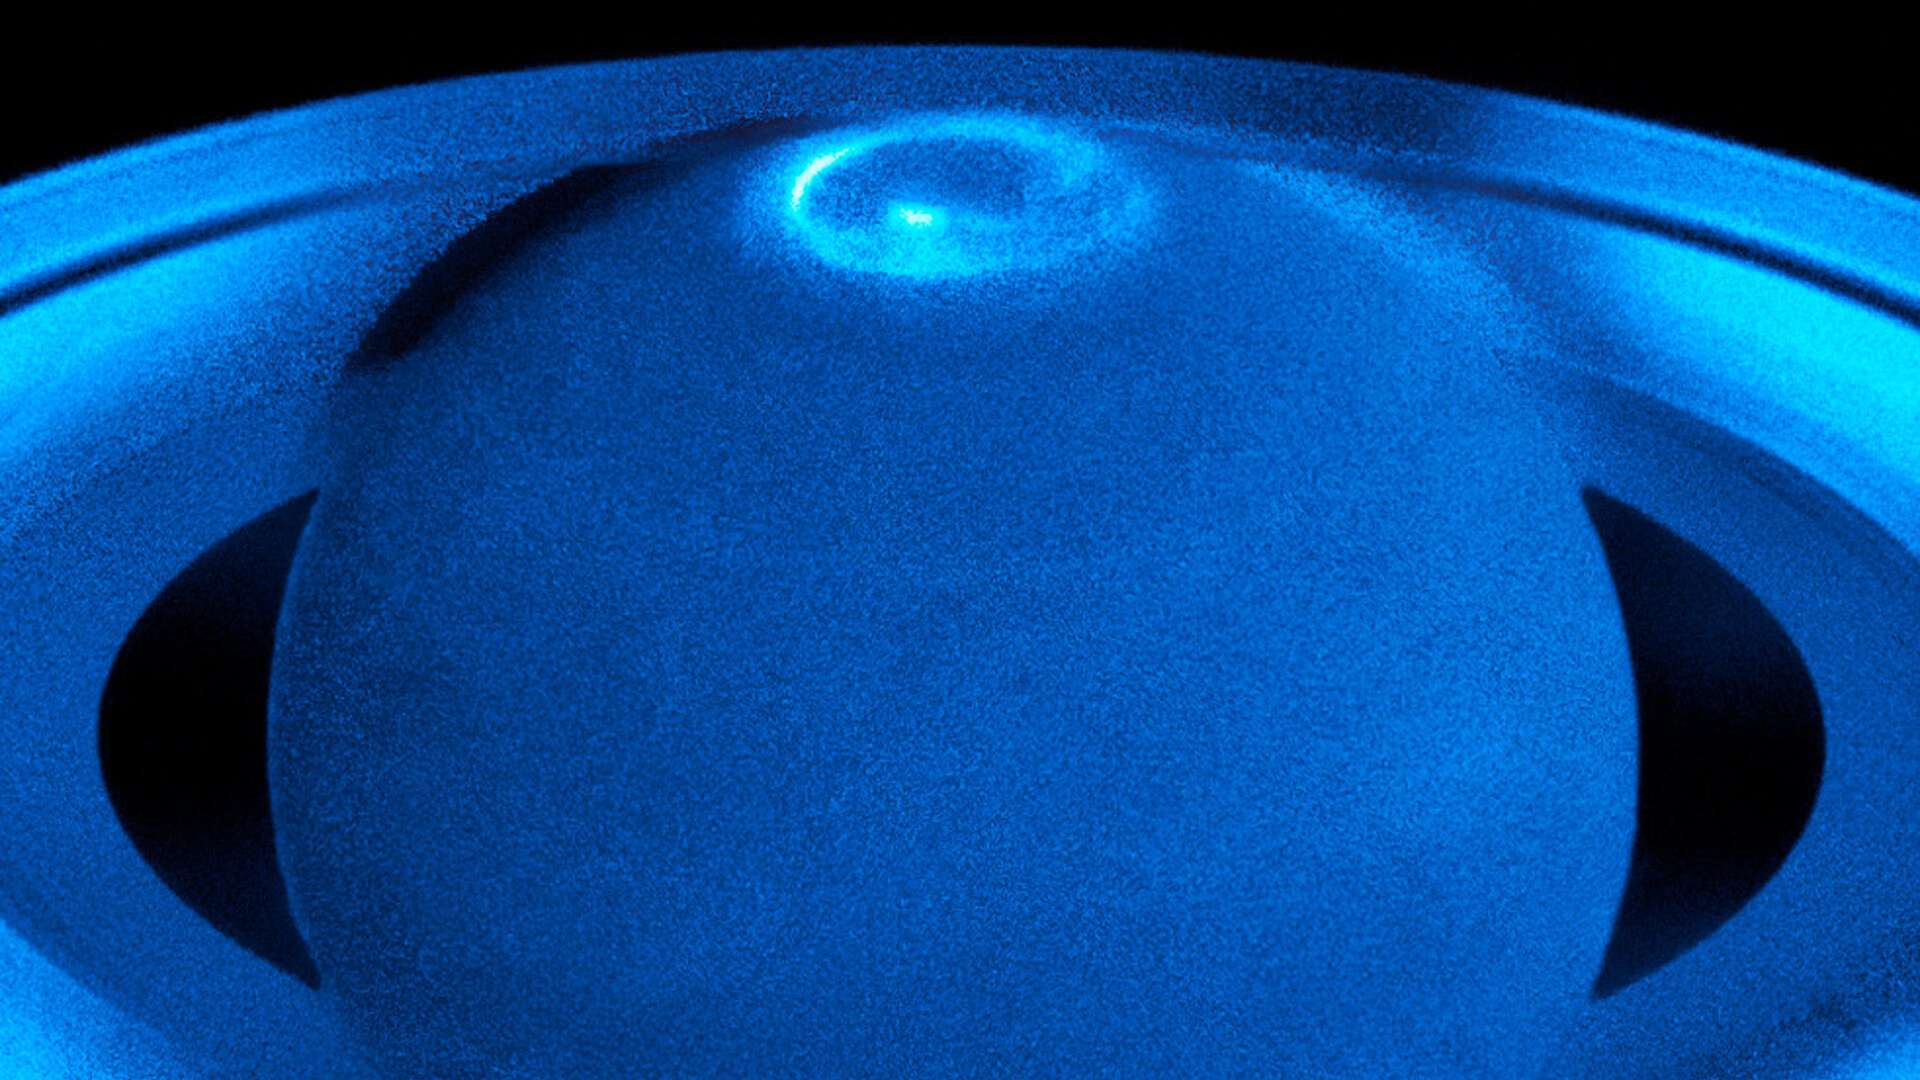 Em 2017, o Telescópio Espacial Hubble registrou imagens de auroras no Polo Norte de Saturno. Na Terra, as auroras são criadas principalmente por partículas emitidas pelo Sol na forma de vento solar. Quando esse fluxo de partículas eletricamente carregadas se aproxima do nosso planeta, ele interage com o campo magnético, que funciona como um escudo gigantesco. As partículas presas na magnetosfera interagem com átomos de oxigênio e nitrogênio, criando luzes coloridas. No entanto, as auroras não são exclusivas da Terra. Como a atmosfera de Saturno é dominada pelo hidrogênio, as suas auroras só podem ser vistas nos comprimentos de onda ultravioleta